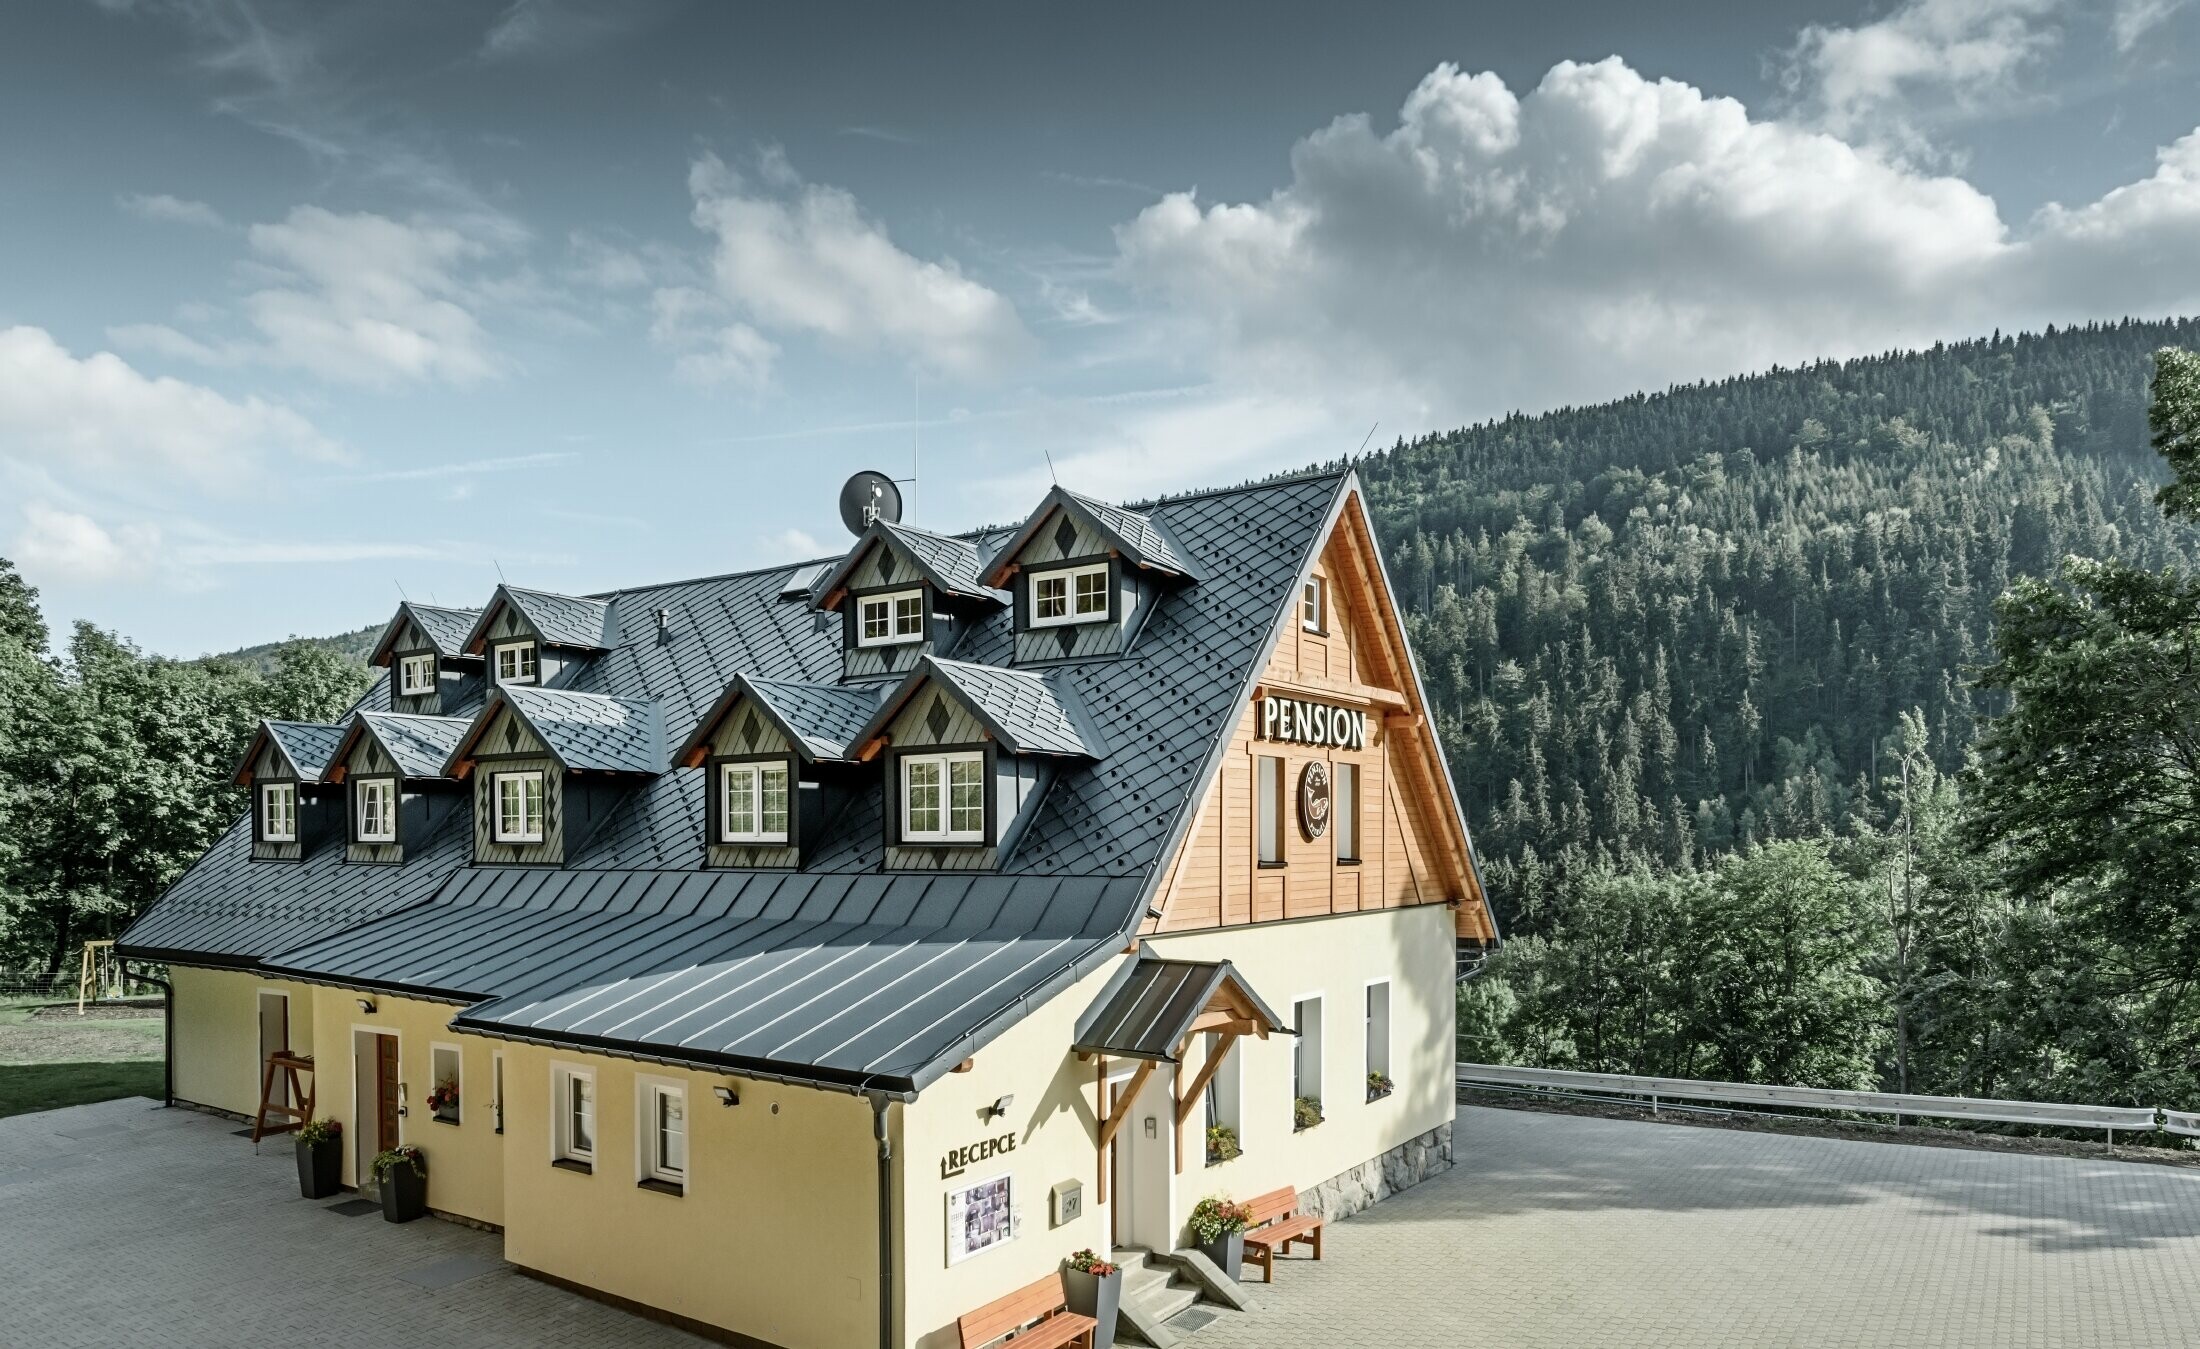 Pension in Tschechien mit Steildach und vielen Gauben eingedeckt mit Aluminiumdach von PREFA, schuppiges Rautendach mit Schneeschutz